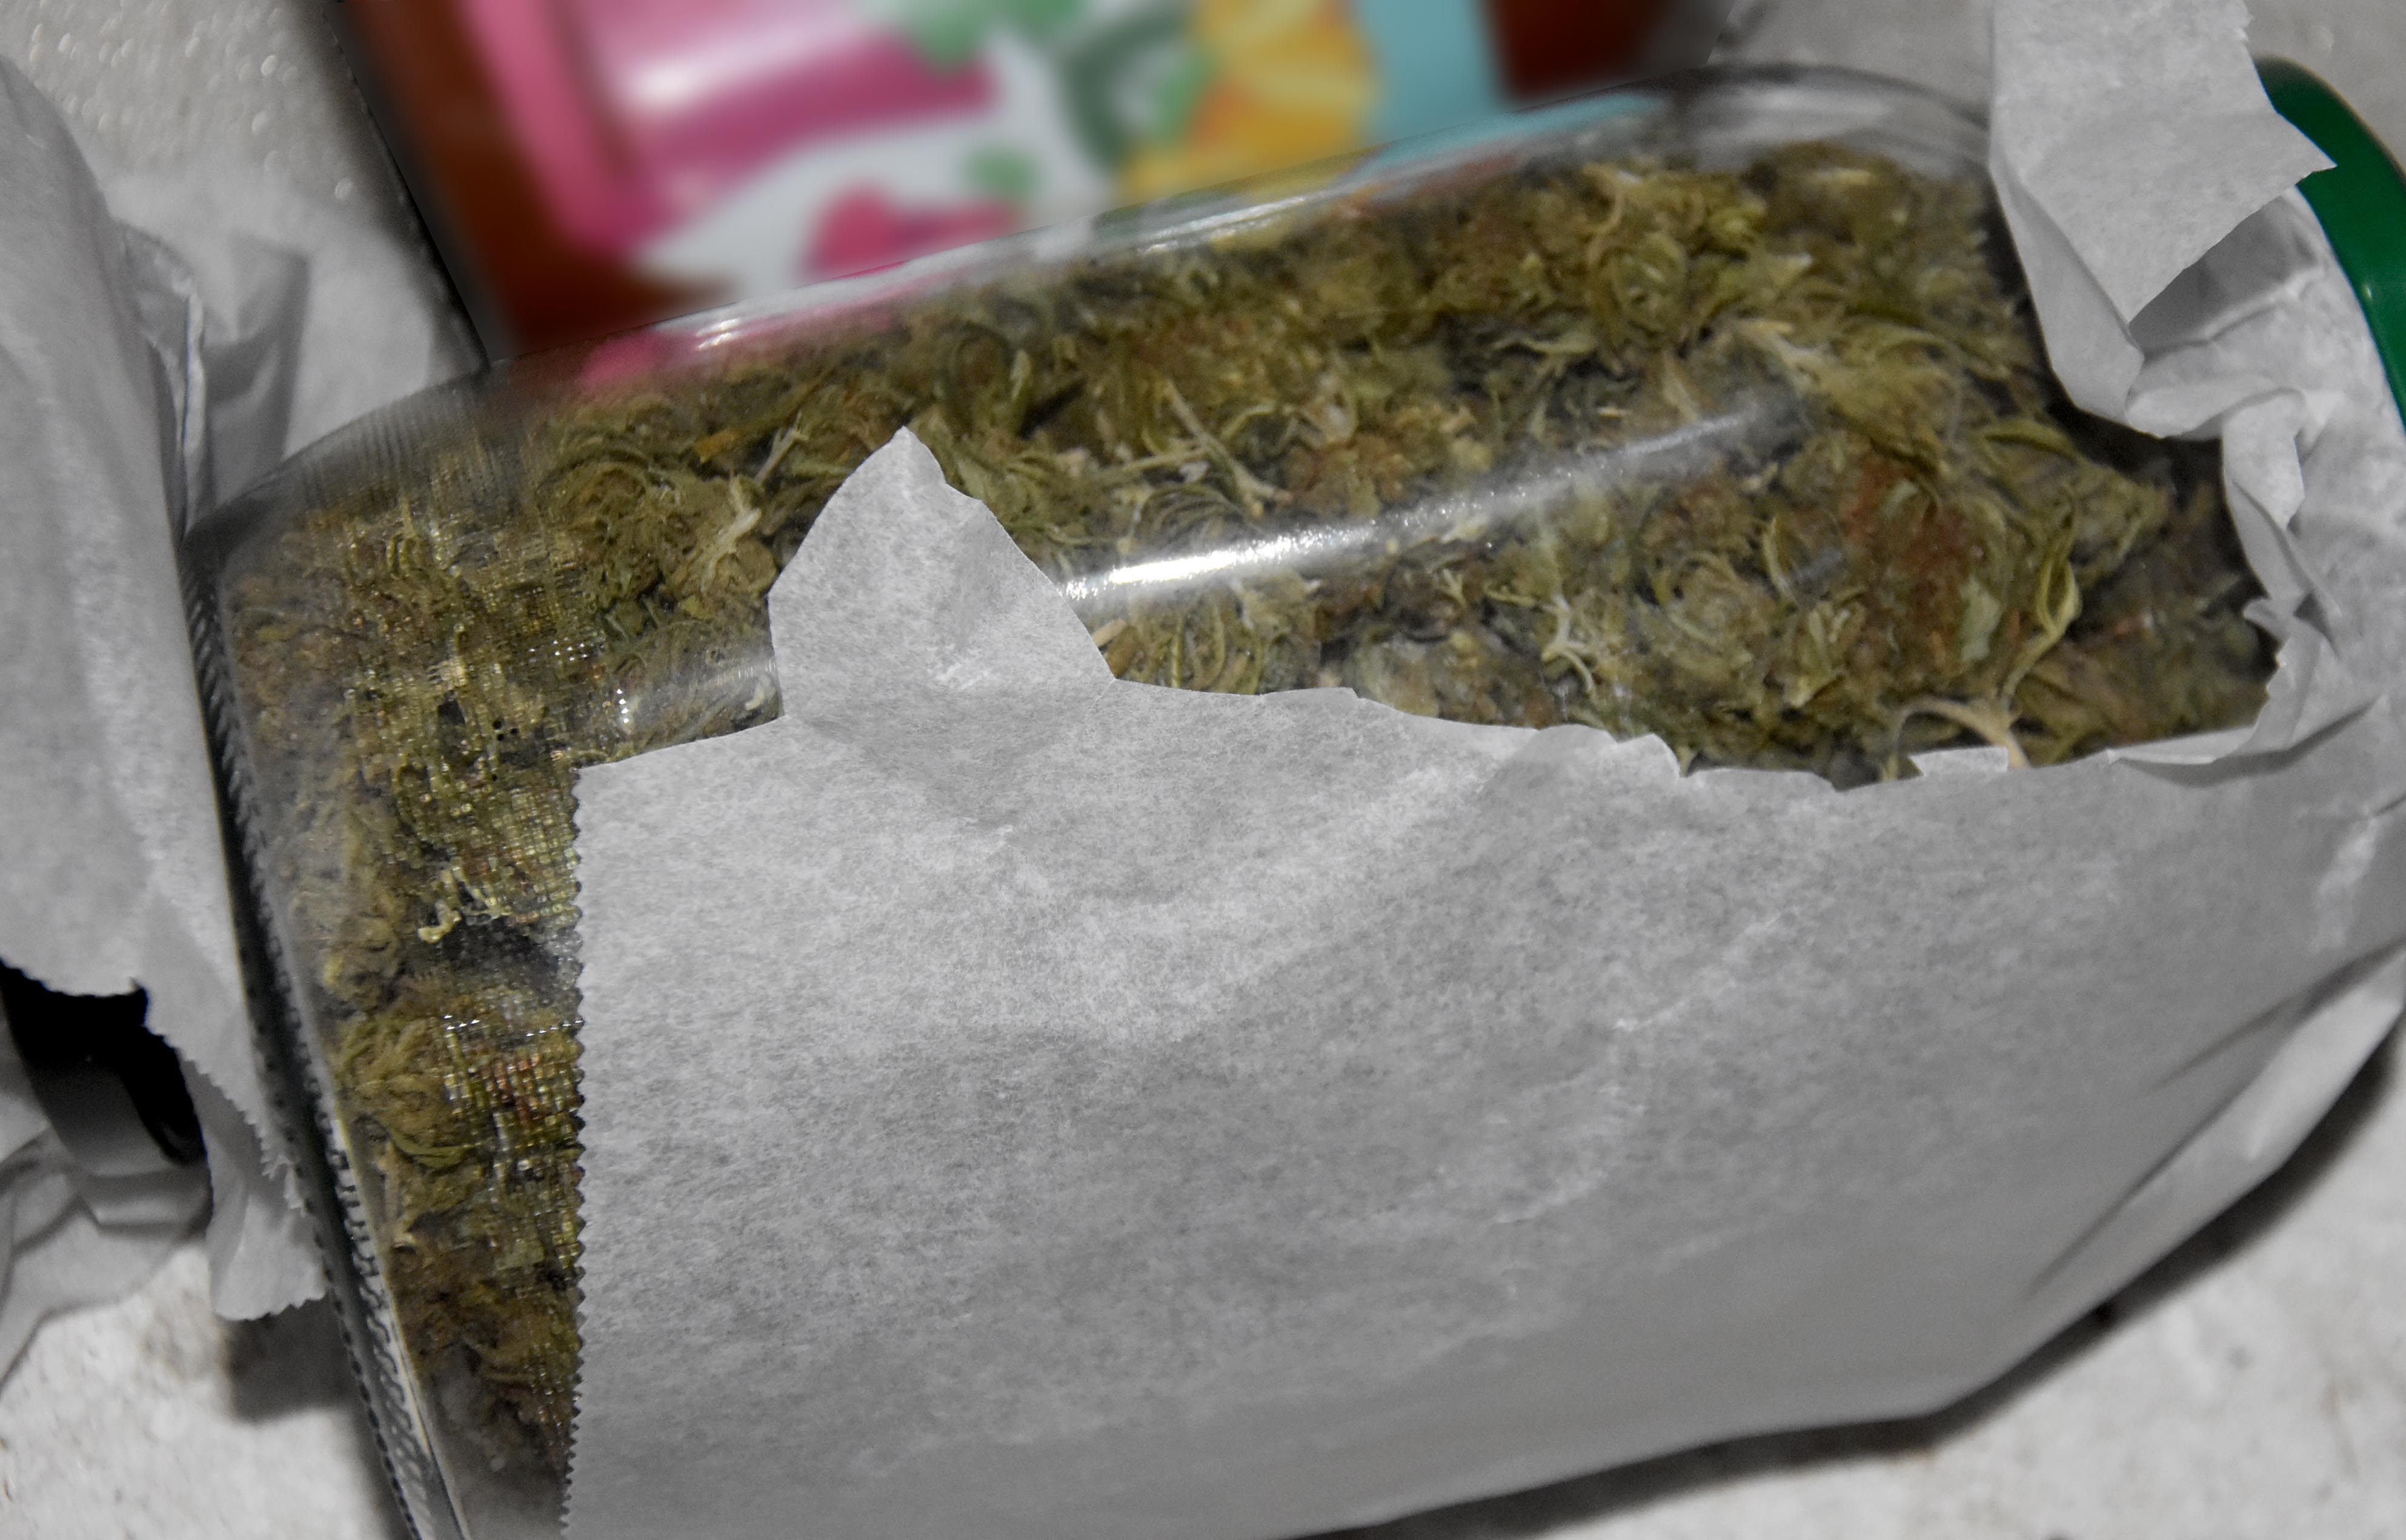 Zaplenjeno oko 3,5 kilograma marihuane, uhapšen osumnjičeni